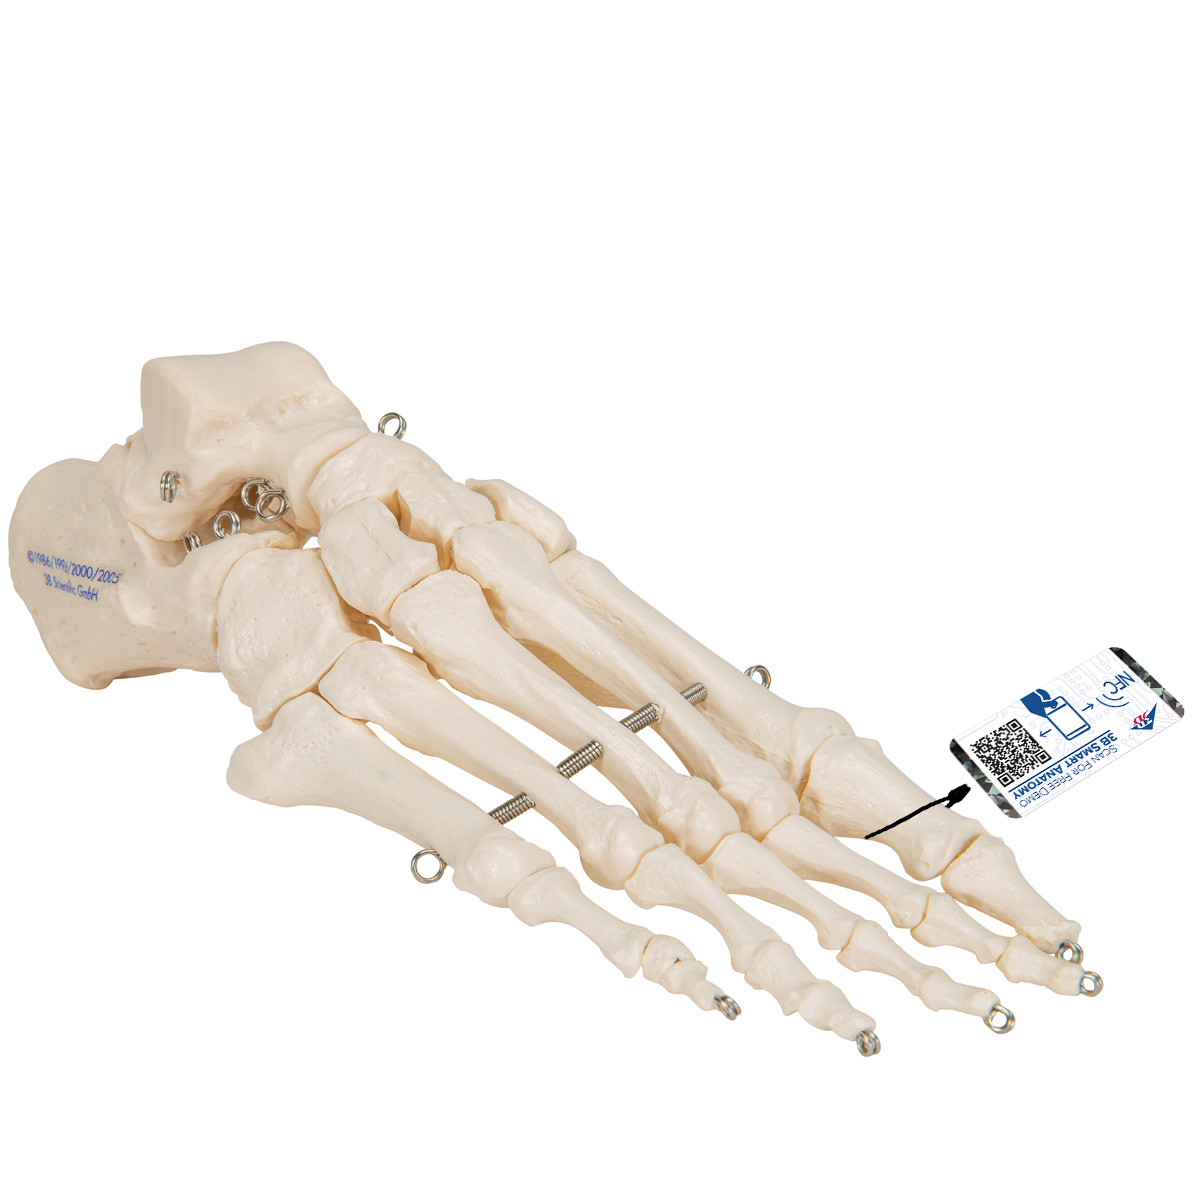 Fußskelett Model, auf Draht gezogen - 3B Smart Anatomy, Bestellnummer 1019355, A30, 3B Scientific